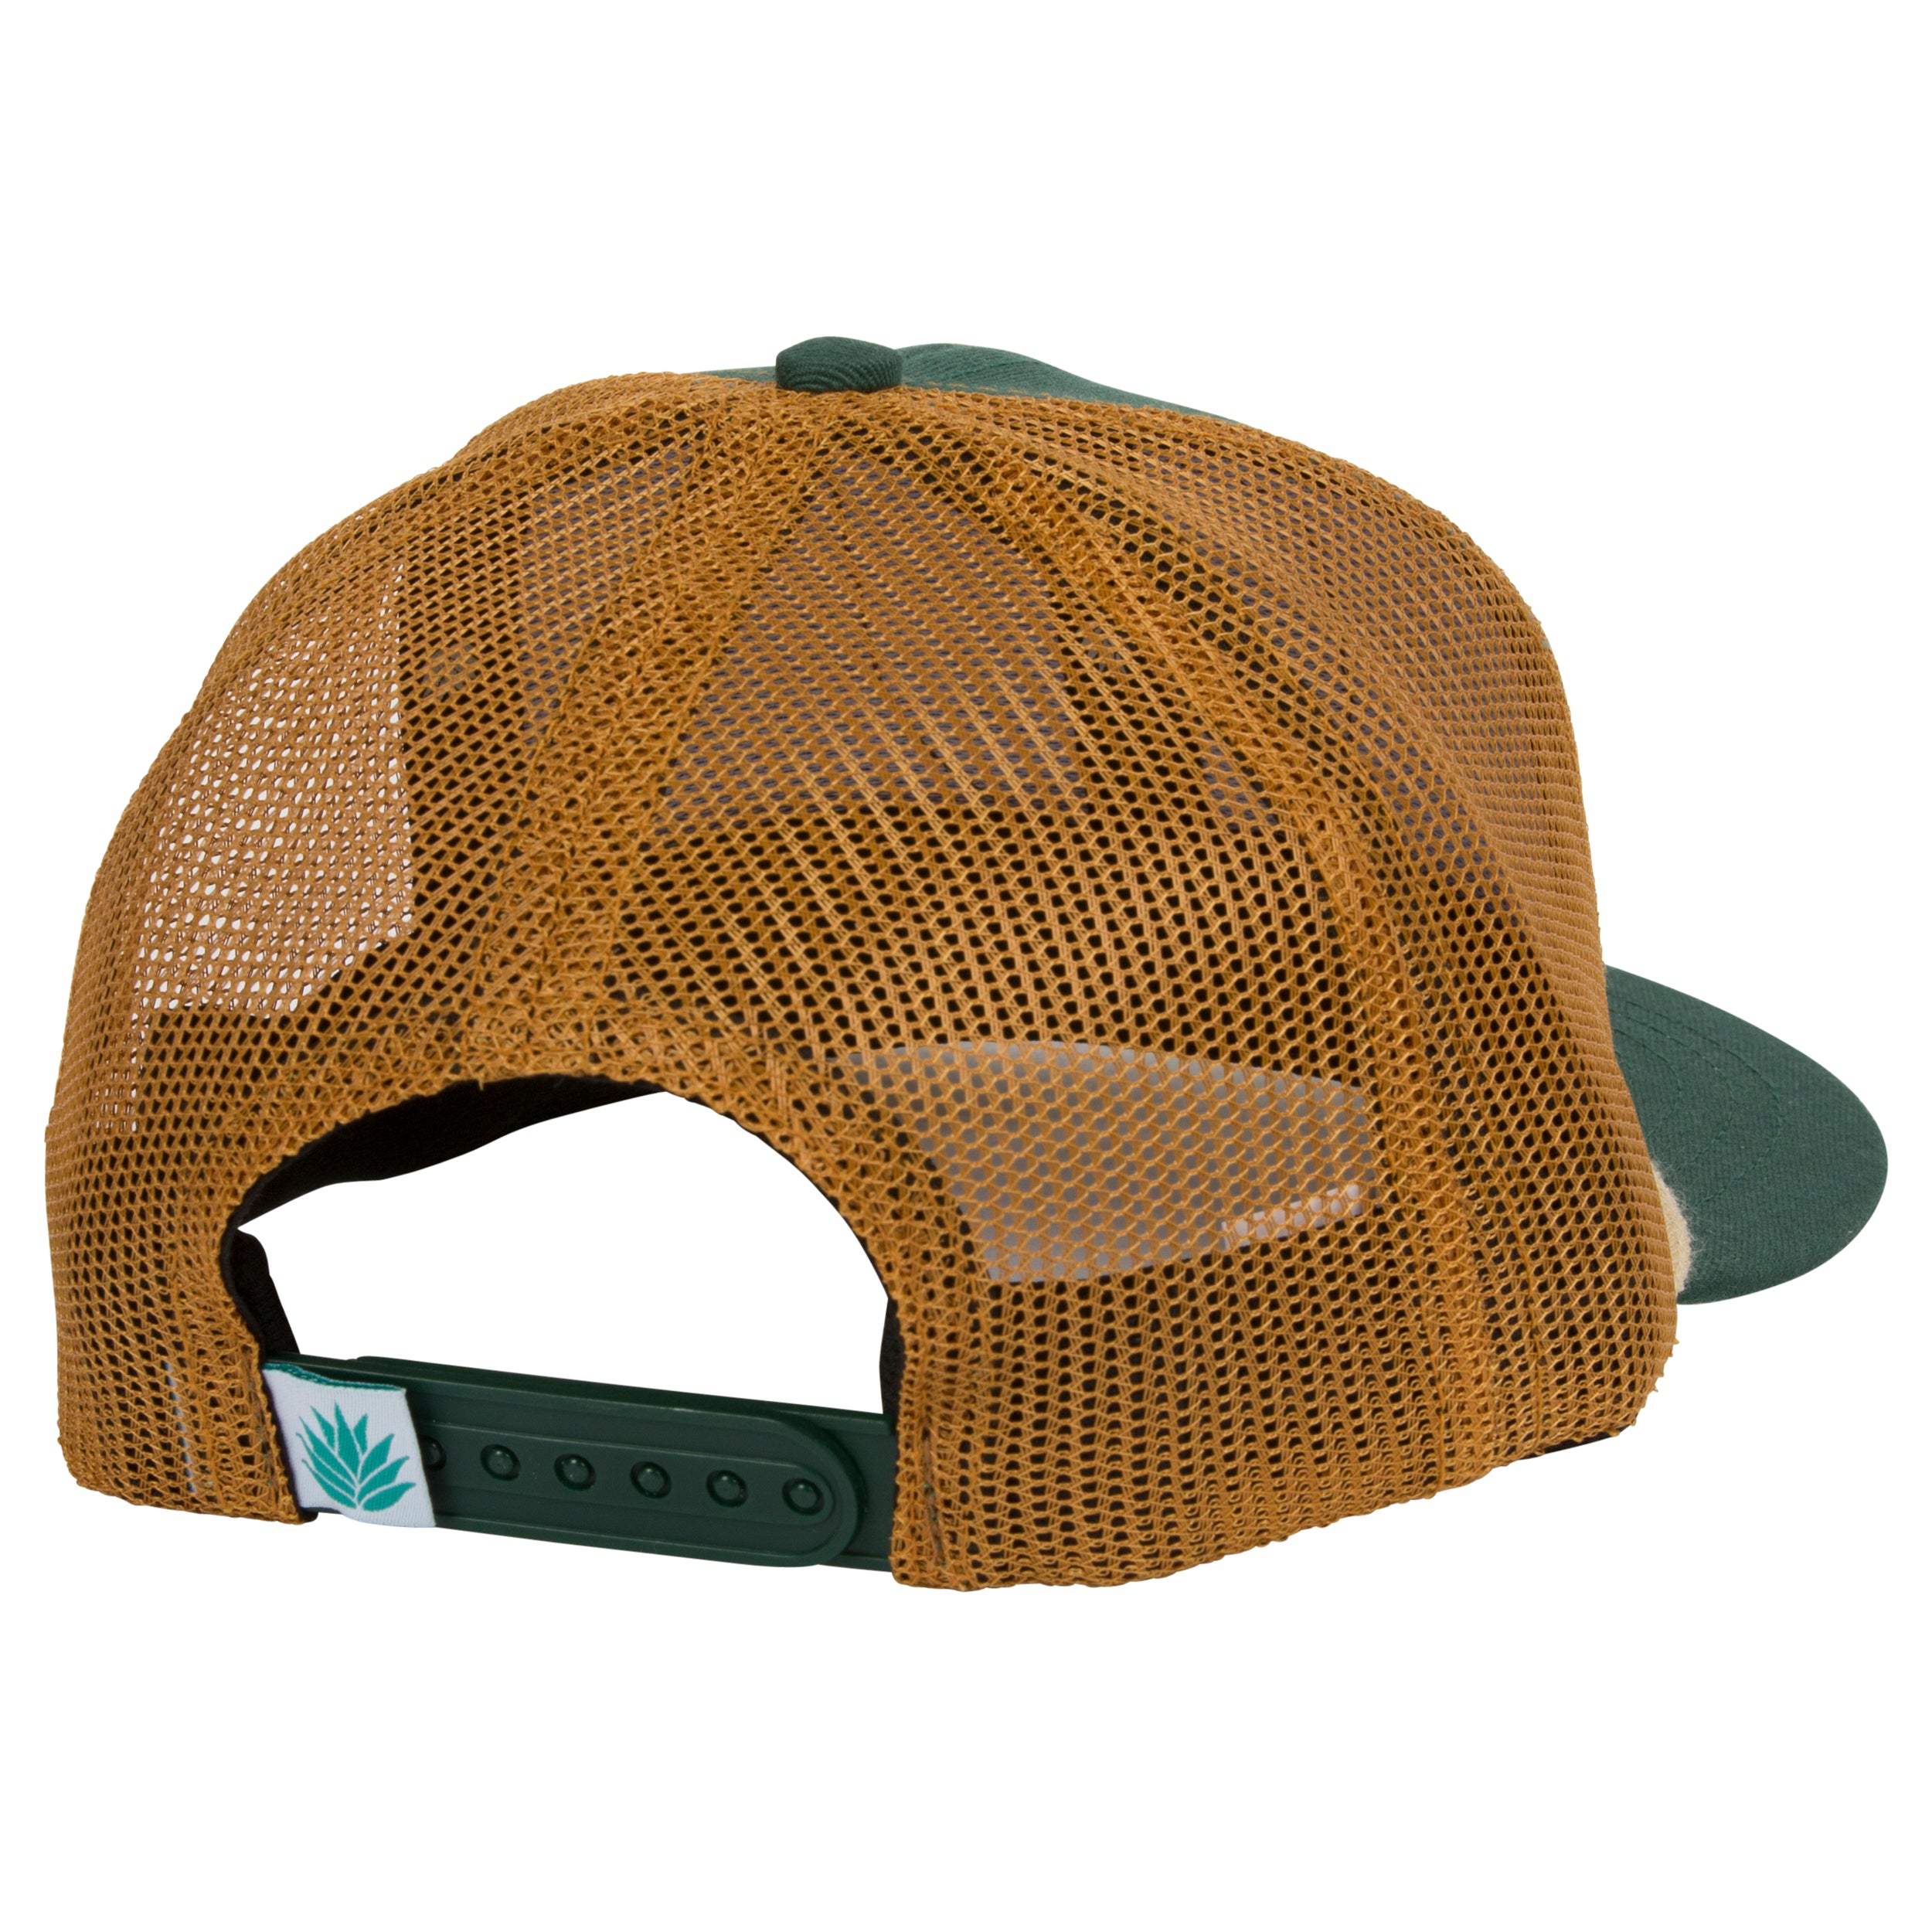 Zion National Park Meshback Hat